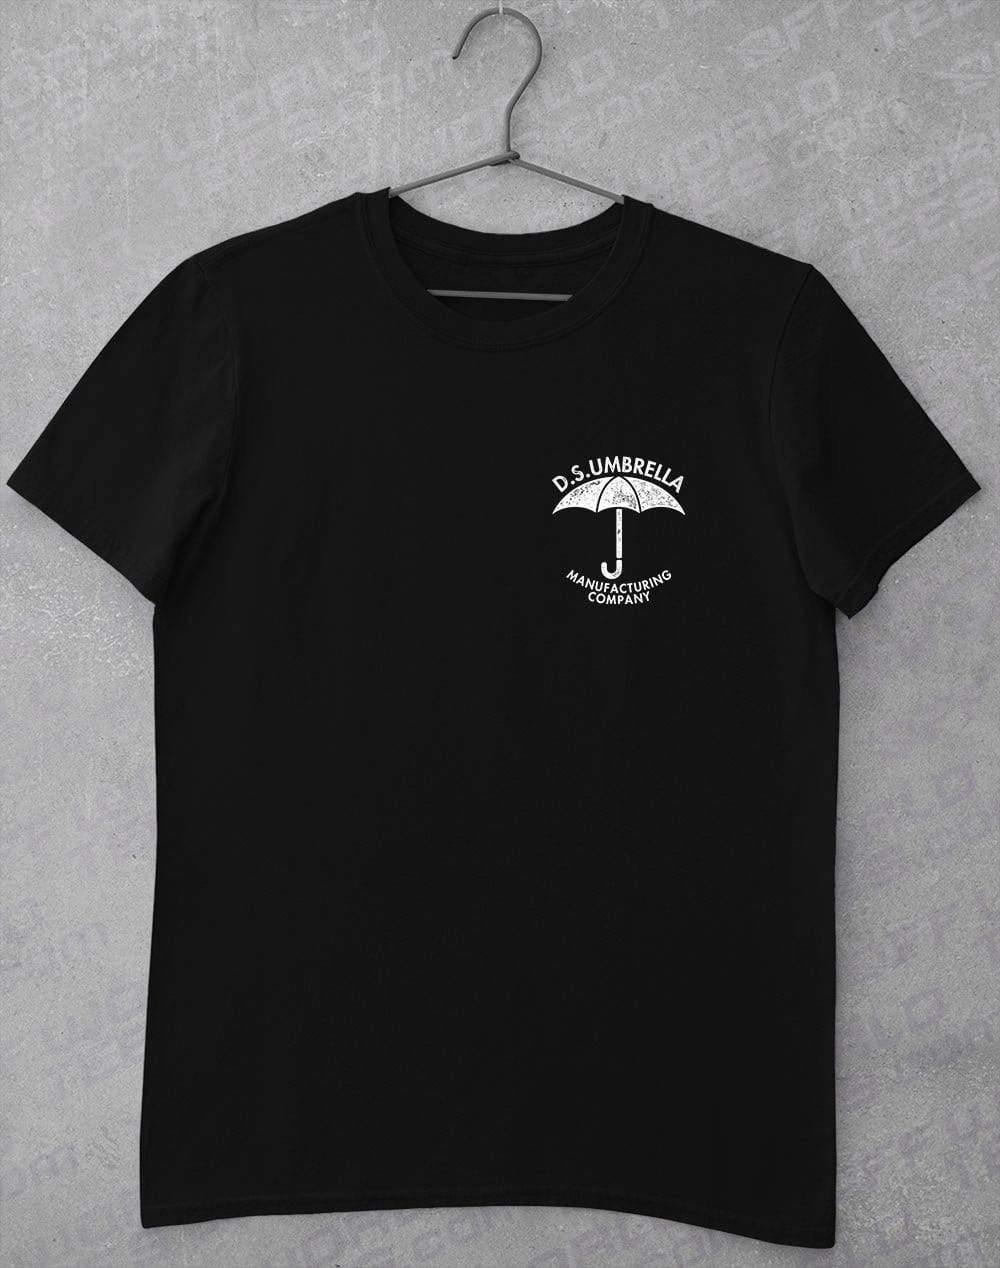 D.S. Umbrella T-Shirt L / Black  - Off World Tees